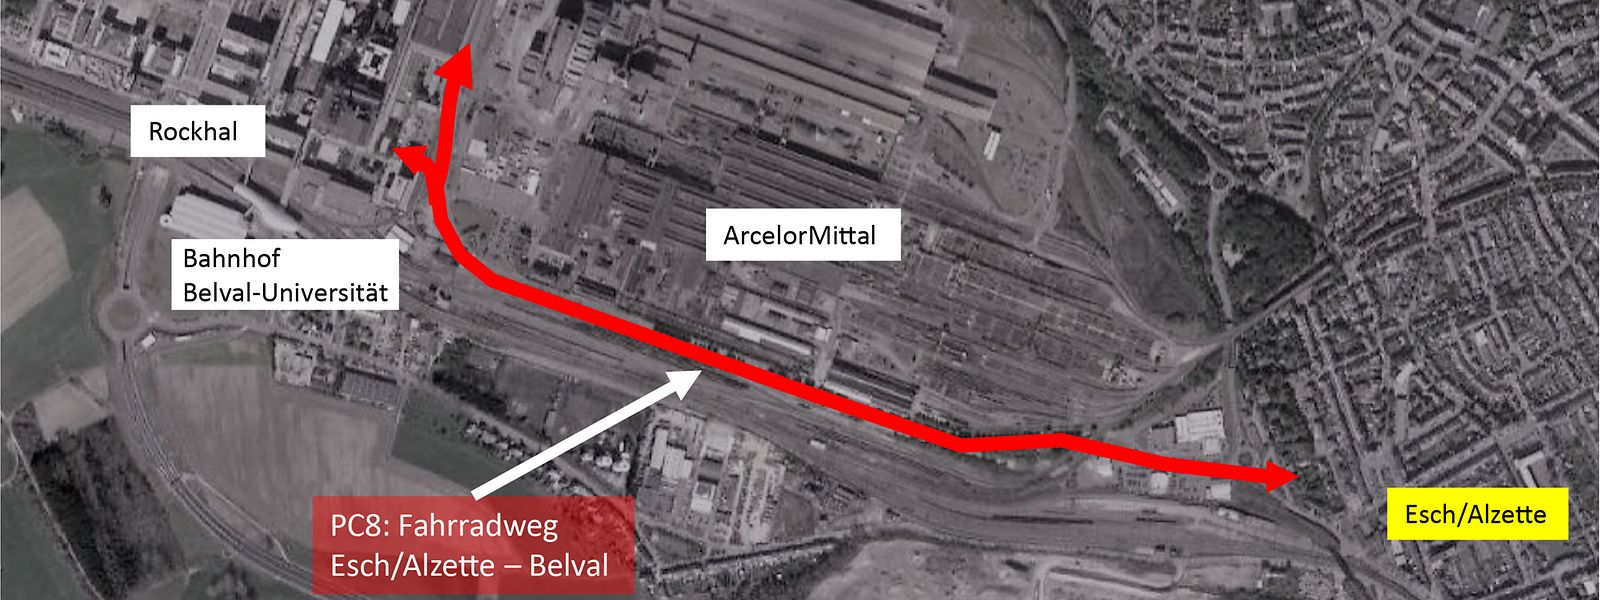 Der Fahrradweg wird eine Länge von zwei Kilometern haben. Damit er über das Gelände von Arcelor Mittal verlaufen kann, musste der Staat lange Verhandlungen führen.